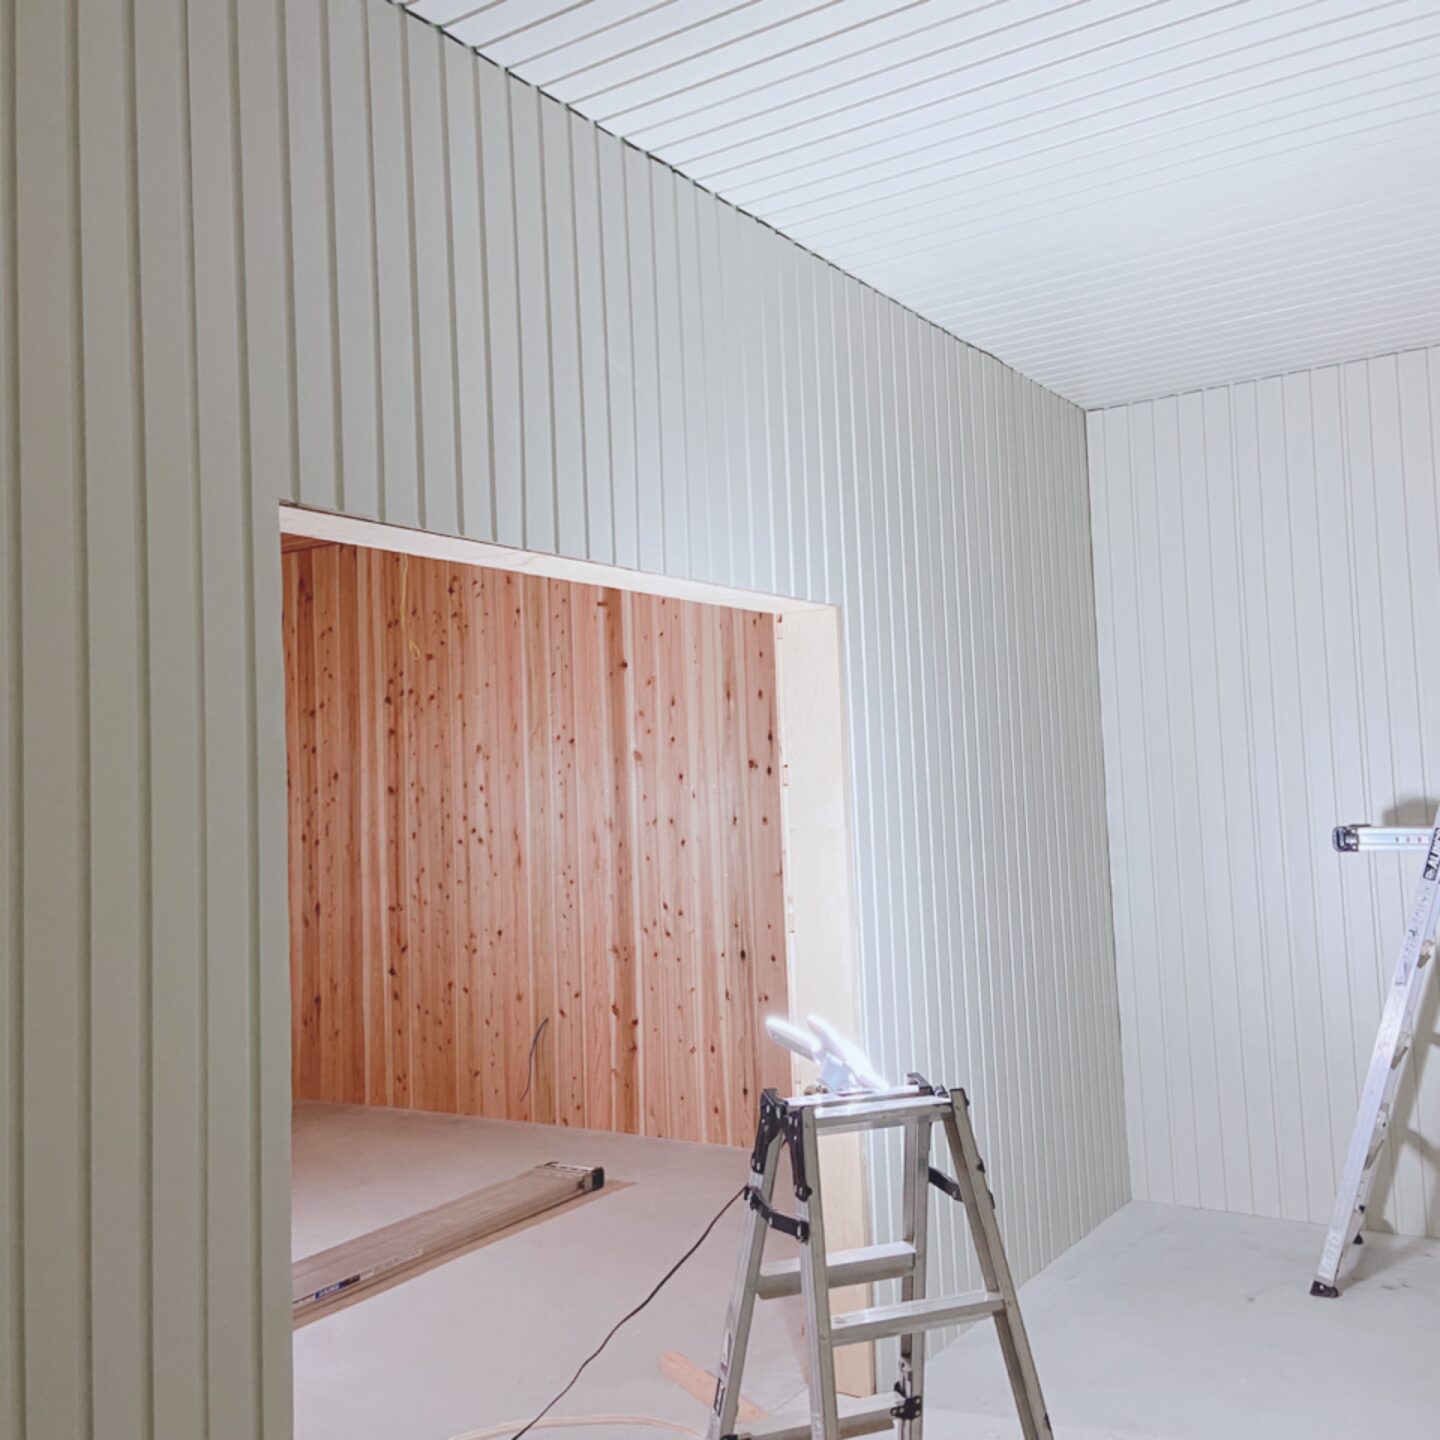 ２×４工法による農業用木造倉庫(冷蔵、保冷、常温の３温度帯倉庫)